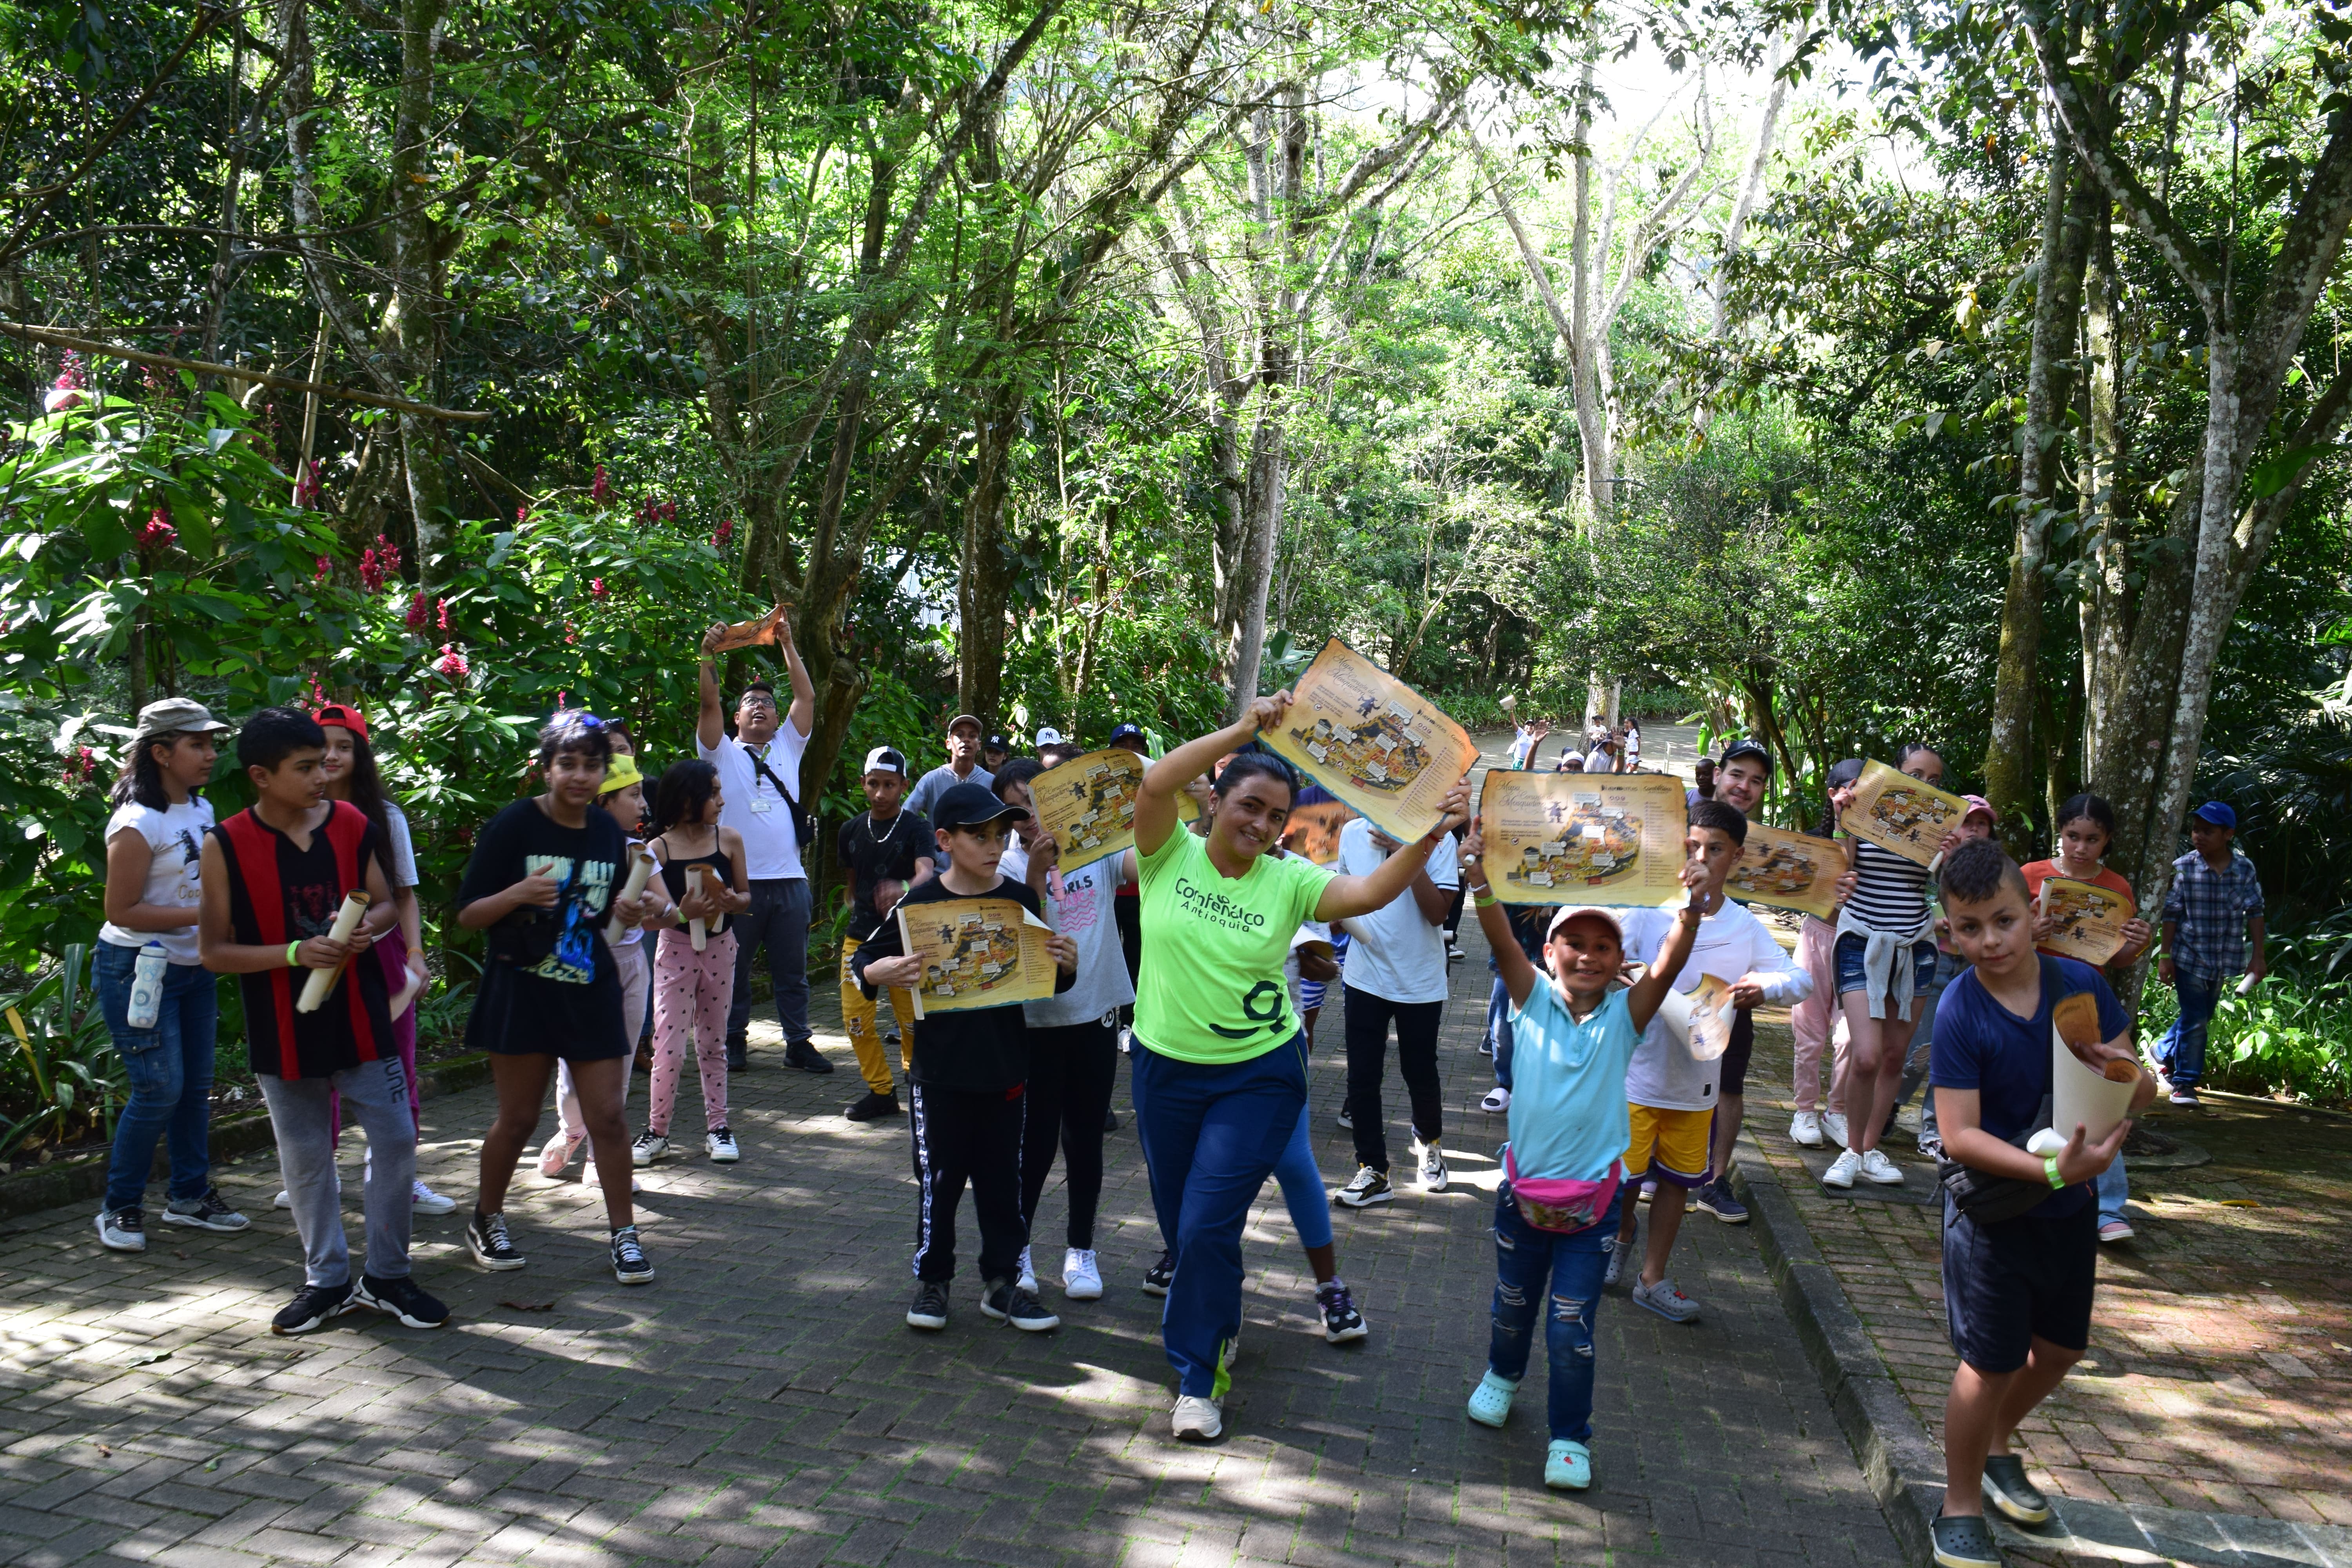  Campamento Divermentes reunirá a 240 estudiantes en el Parque Los Tamarindos